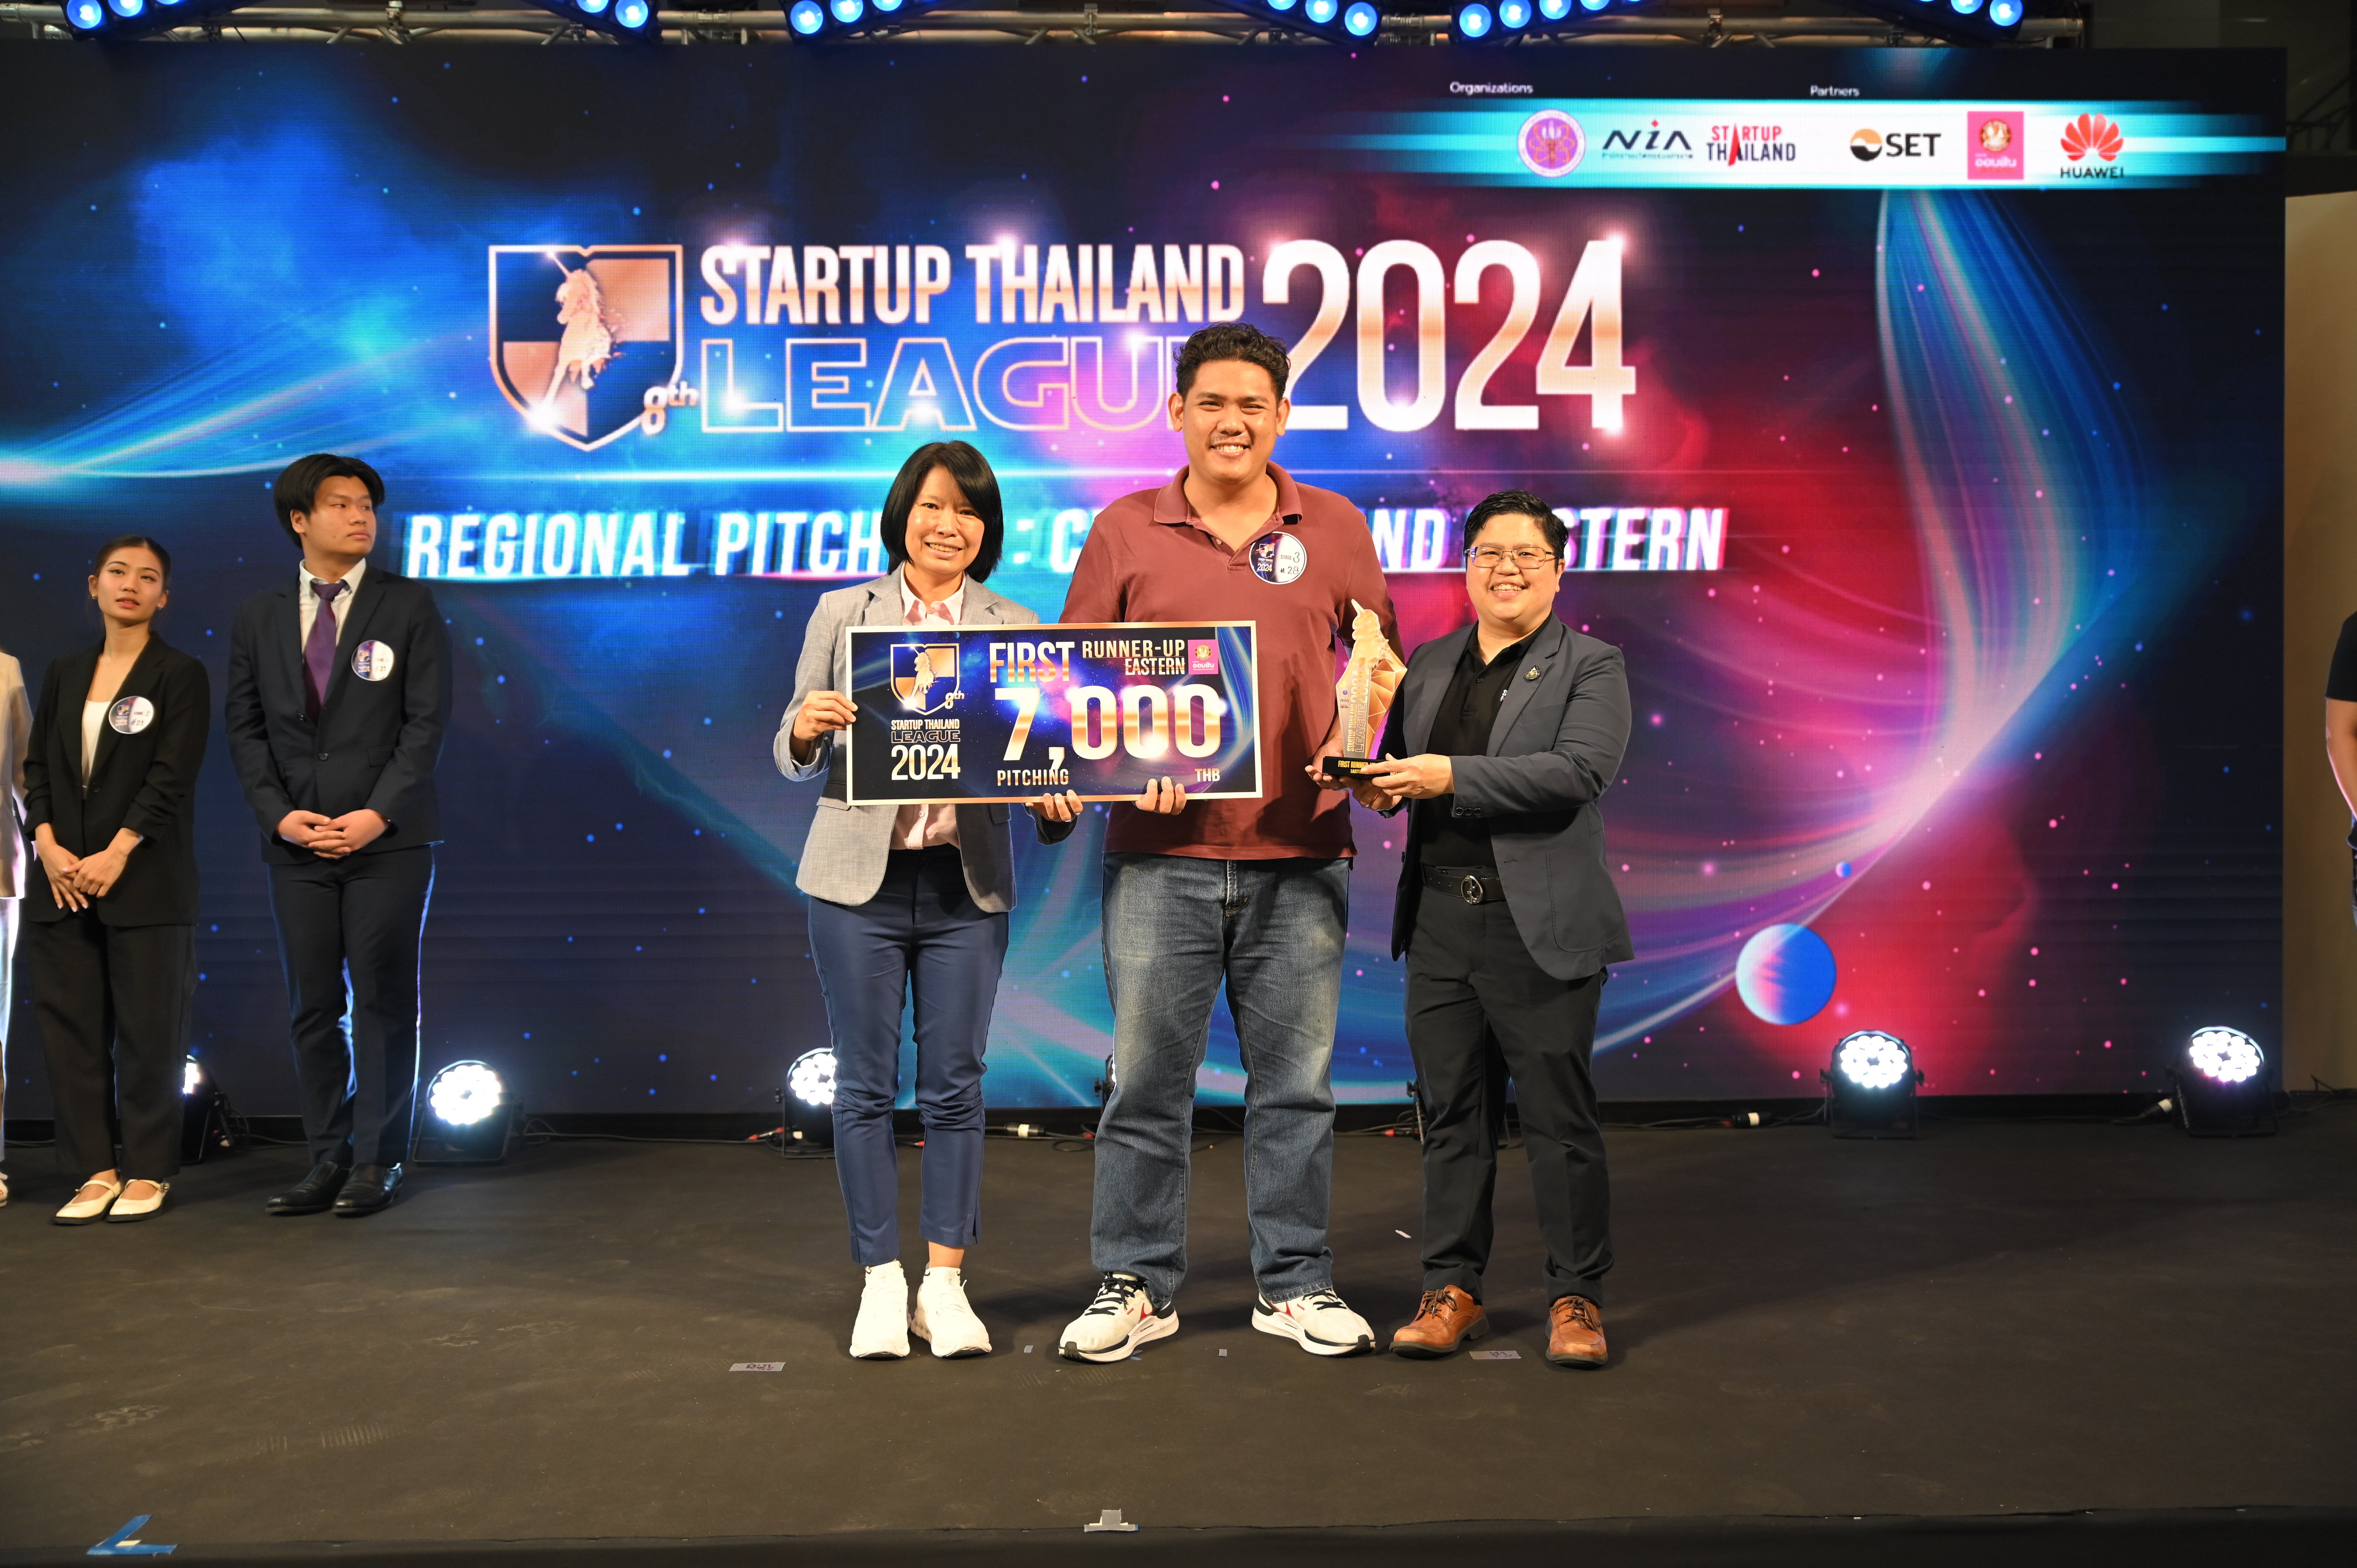 ทีม "เจนนี่ หว่อง" จาก ม.บูรพา คว้ารางวัลชนะเลิศ  STARTUP THAILAND LEAGUE 2024 